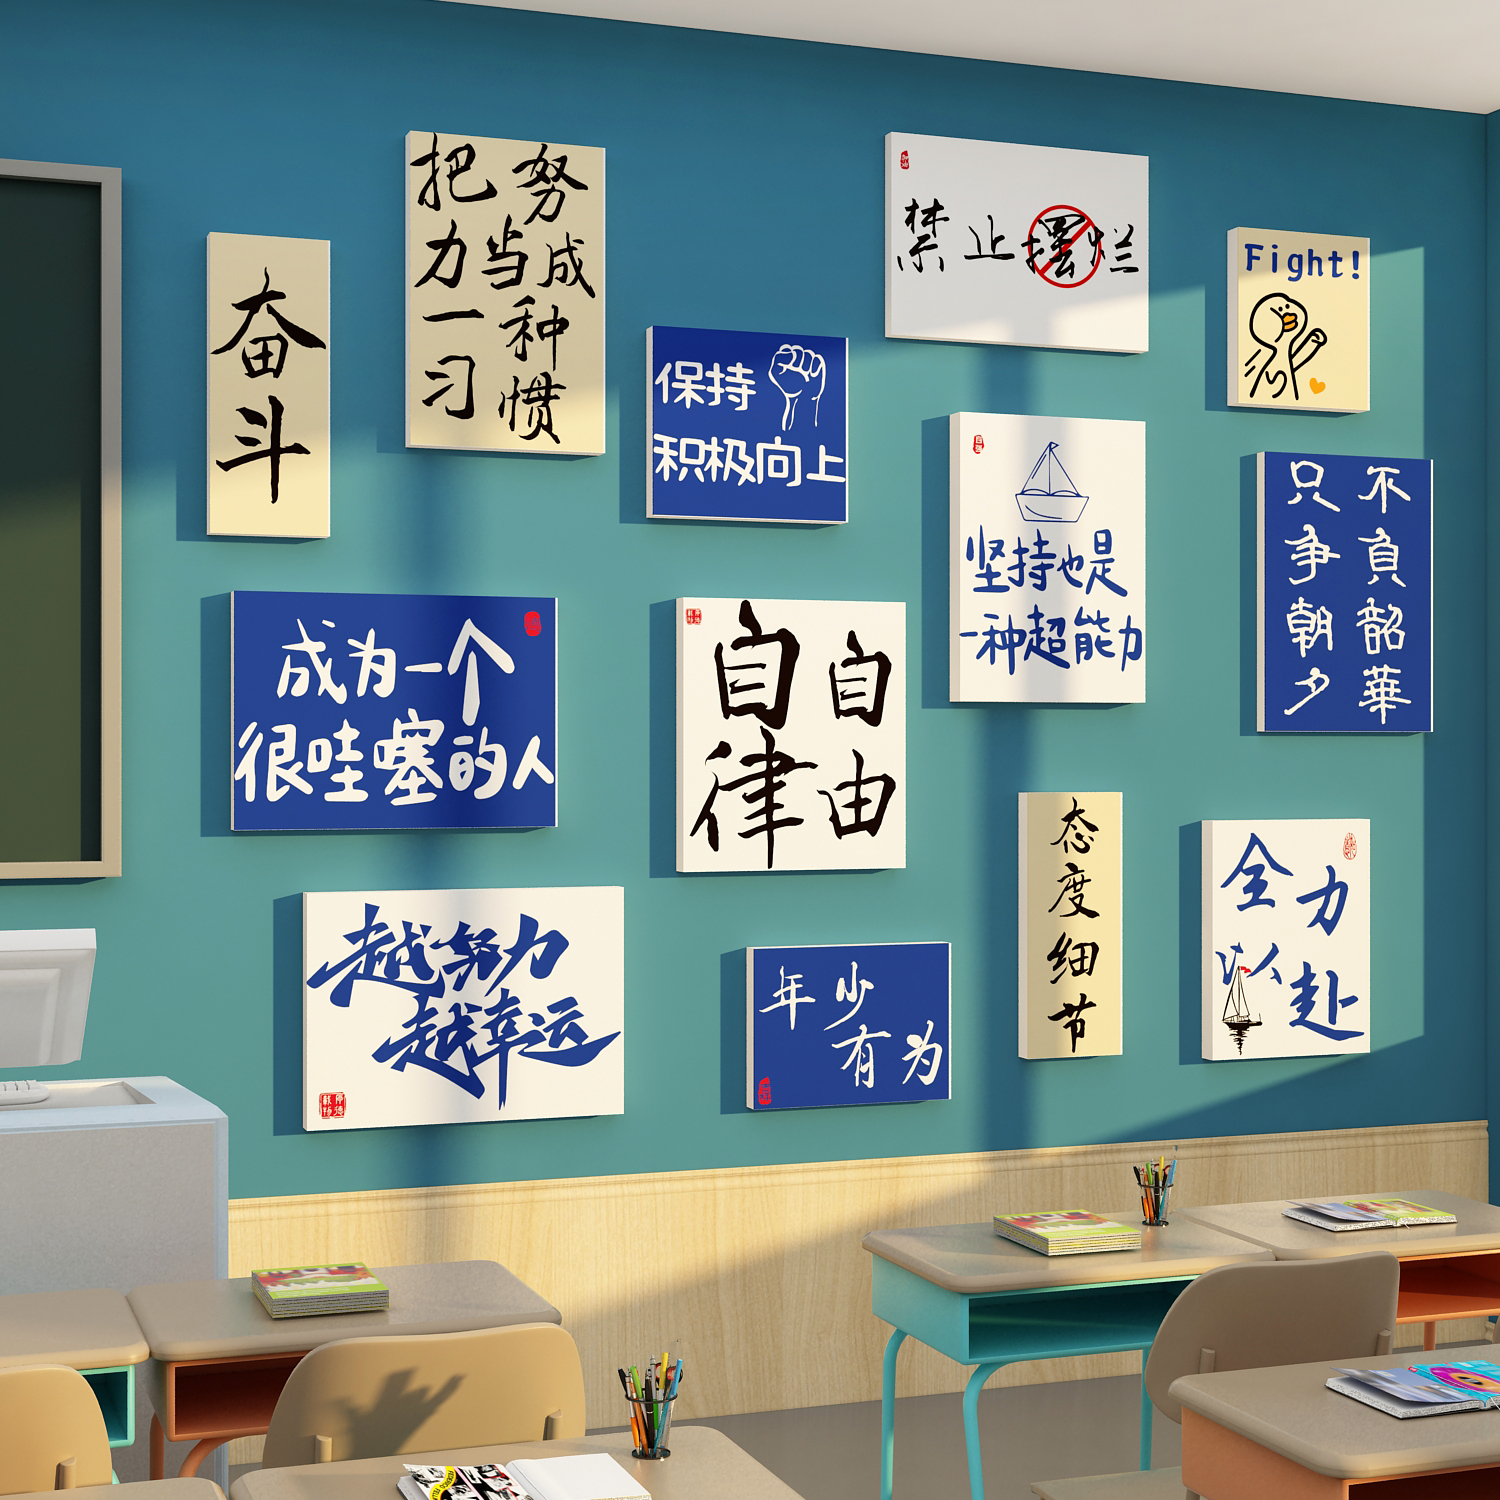 教室布置装饰班级文化墙贴托管黑板报材料励志标语自习小学期中考